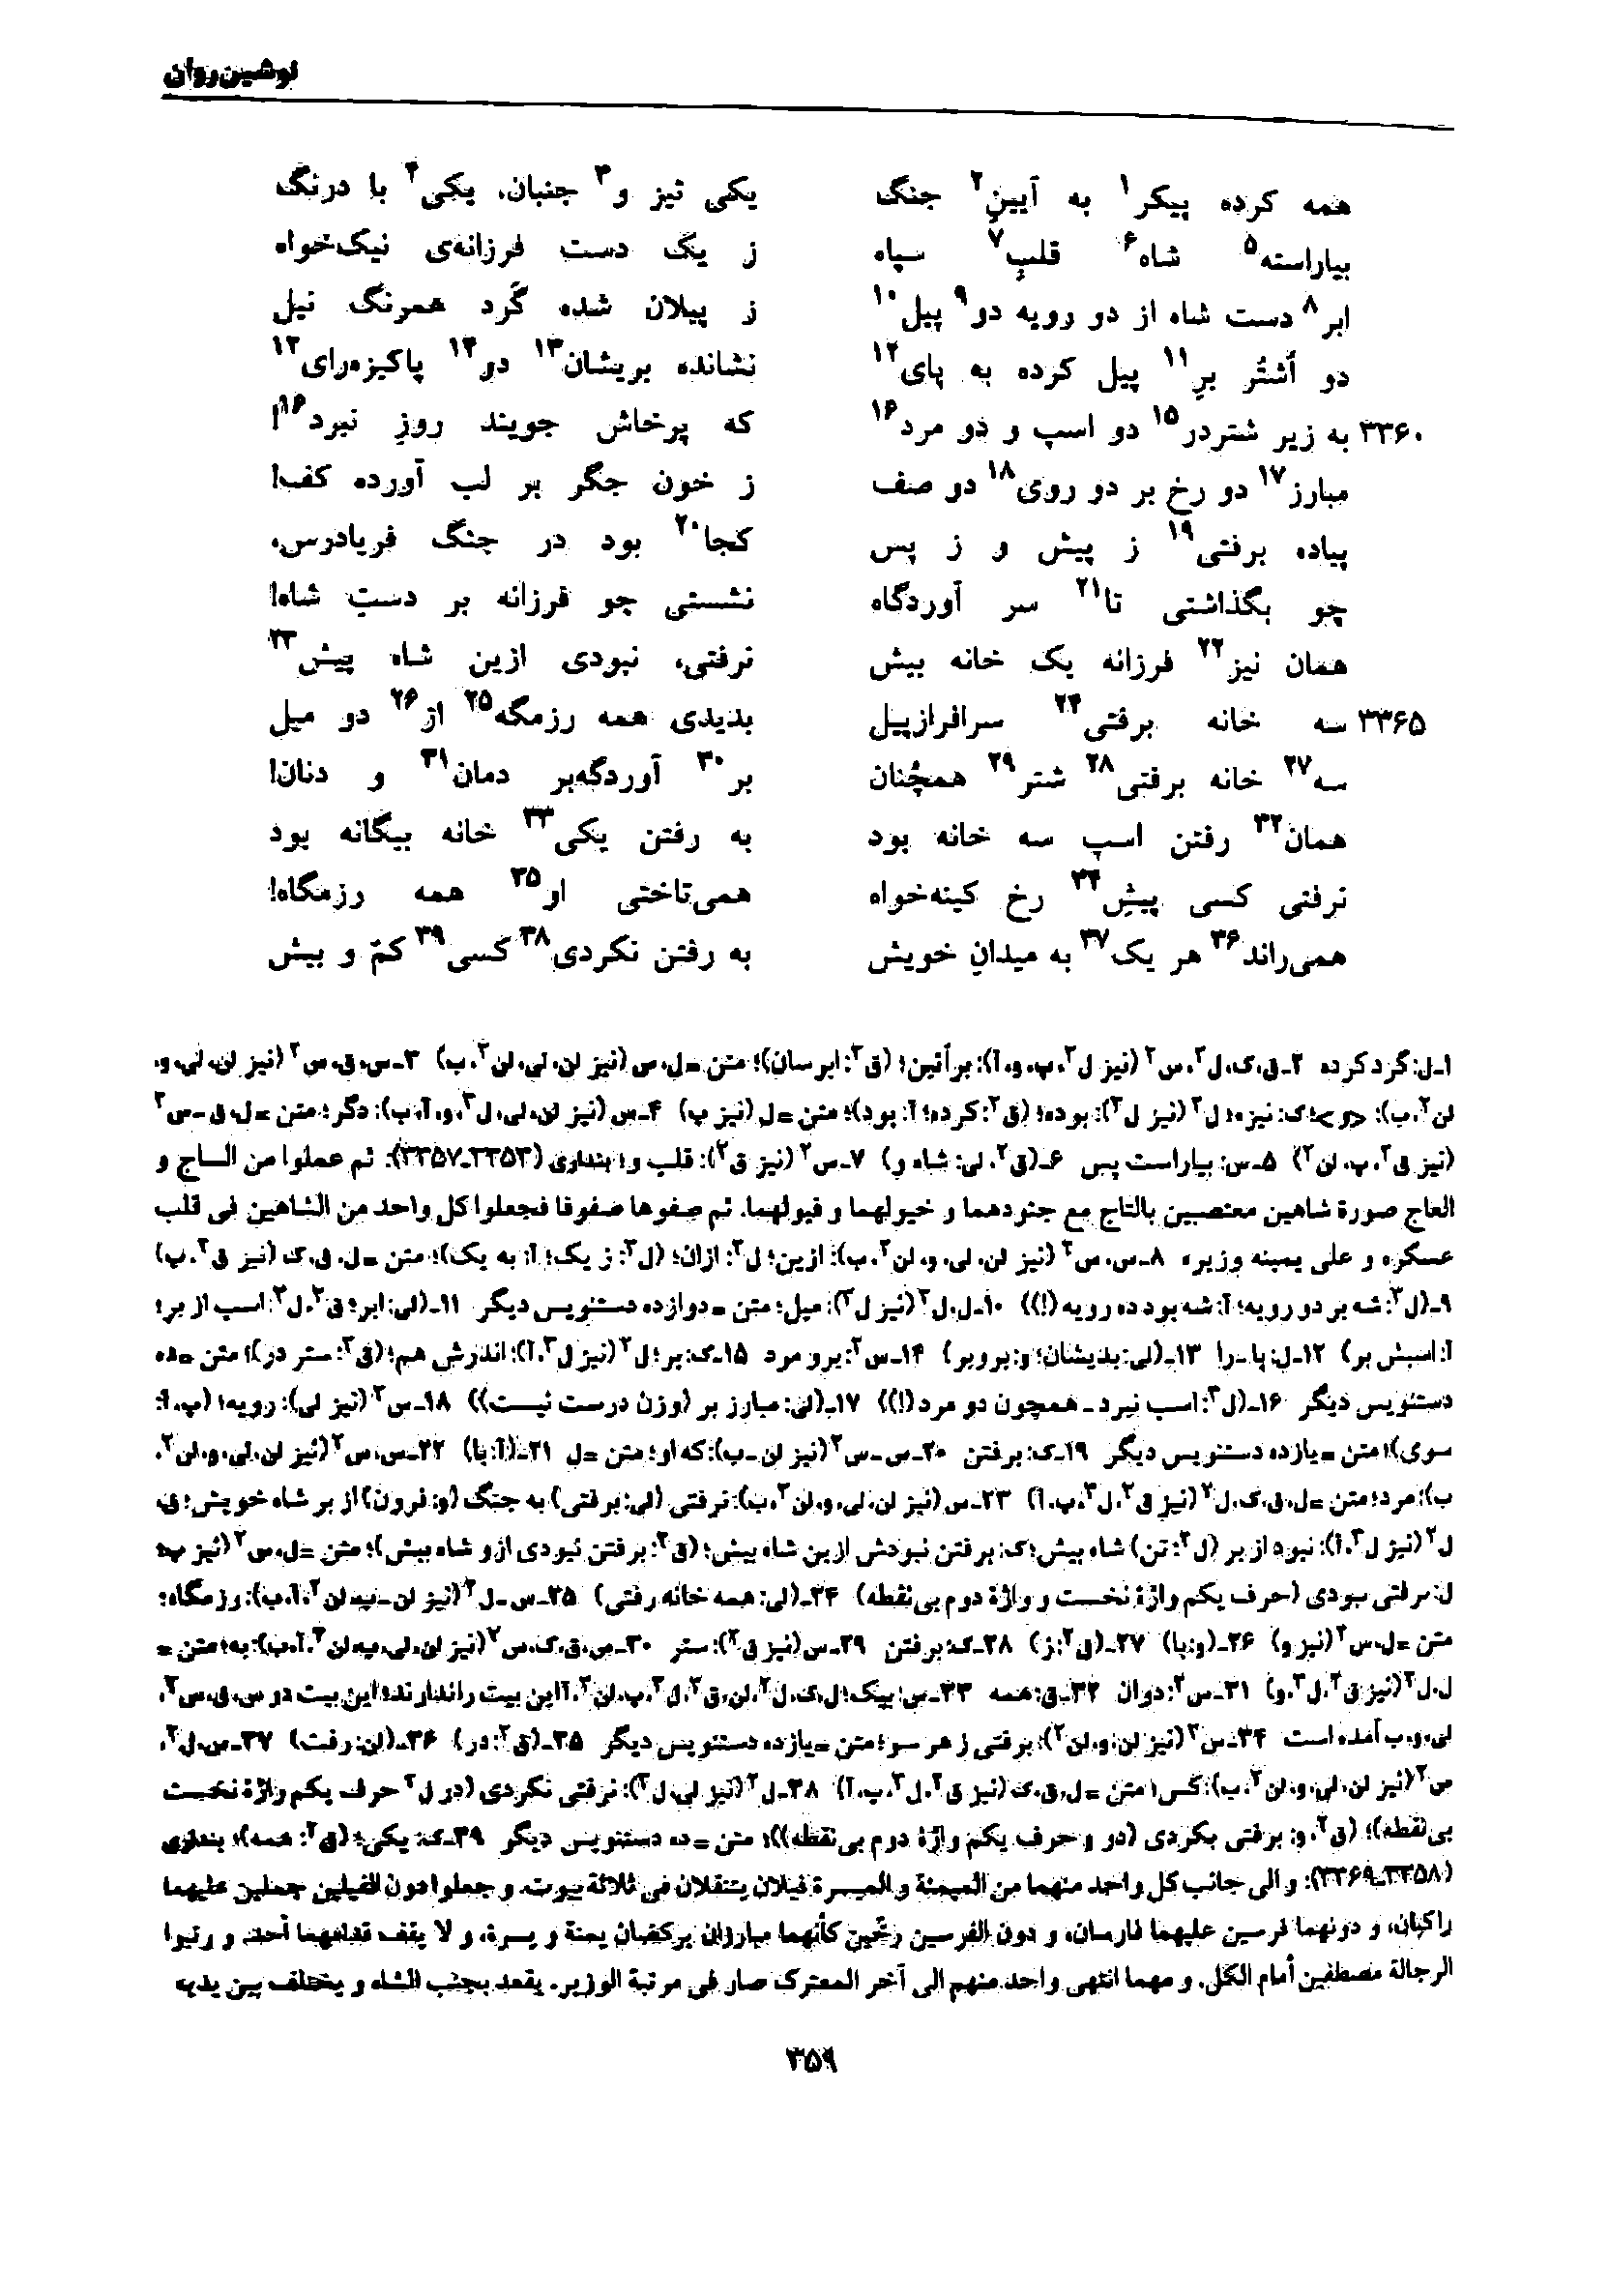 vol. 7, p. 359